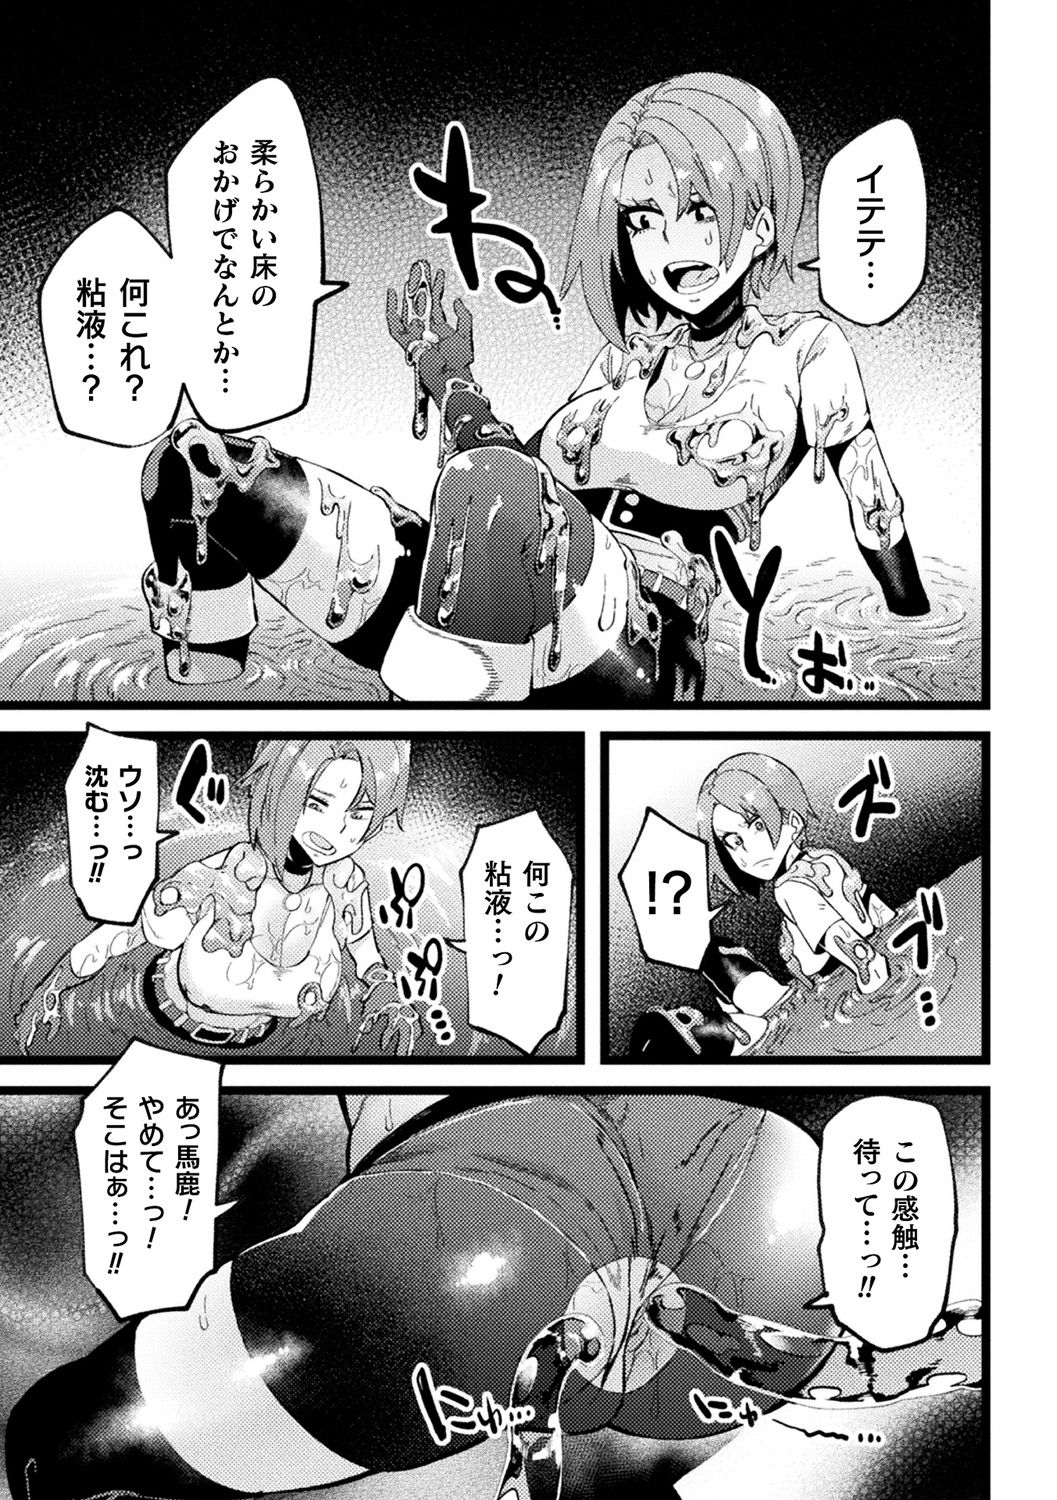 [Anthology] Bessatsu Comic Unreal Ponkotsu Fantasy Heroine H ~Doji o Funde Gyakuten Saretari Ero Trap ni Hamattari!?~ Vol. 2 [Digital] page 46 full